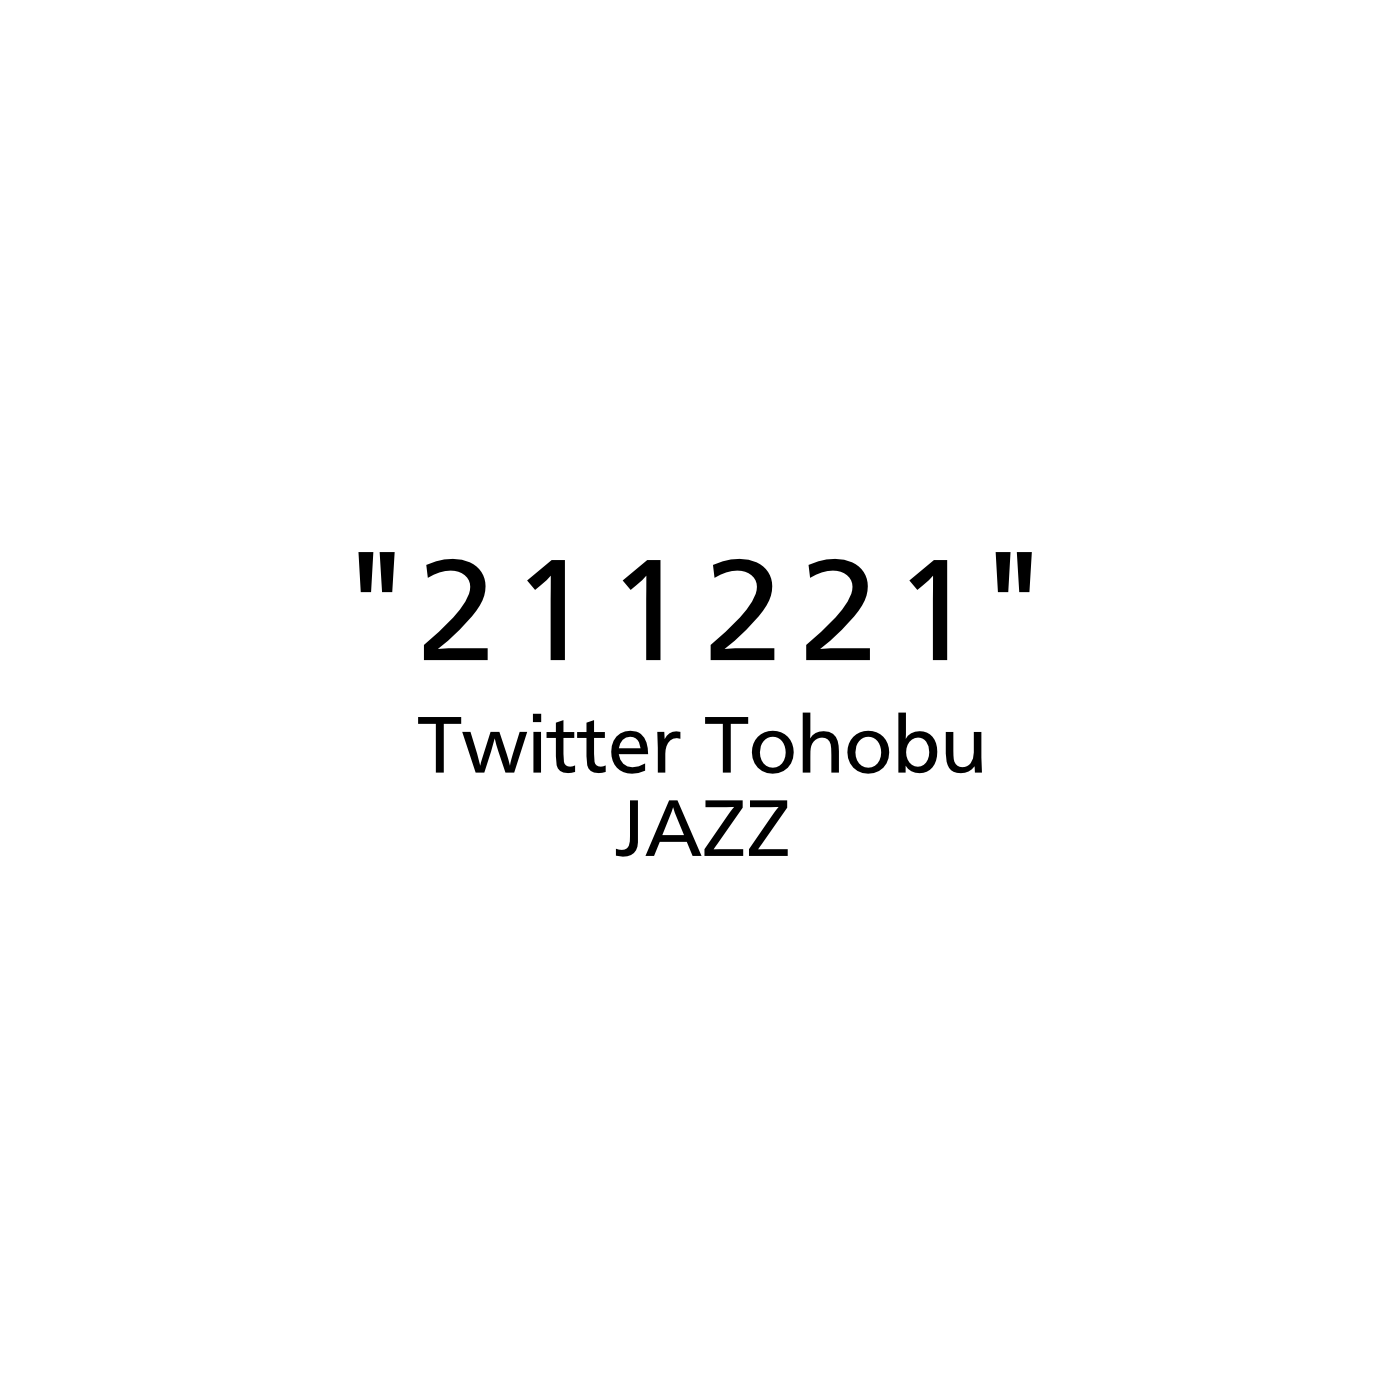 17th JAZZ E.P. "211221"